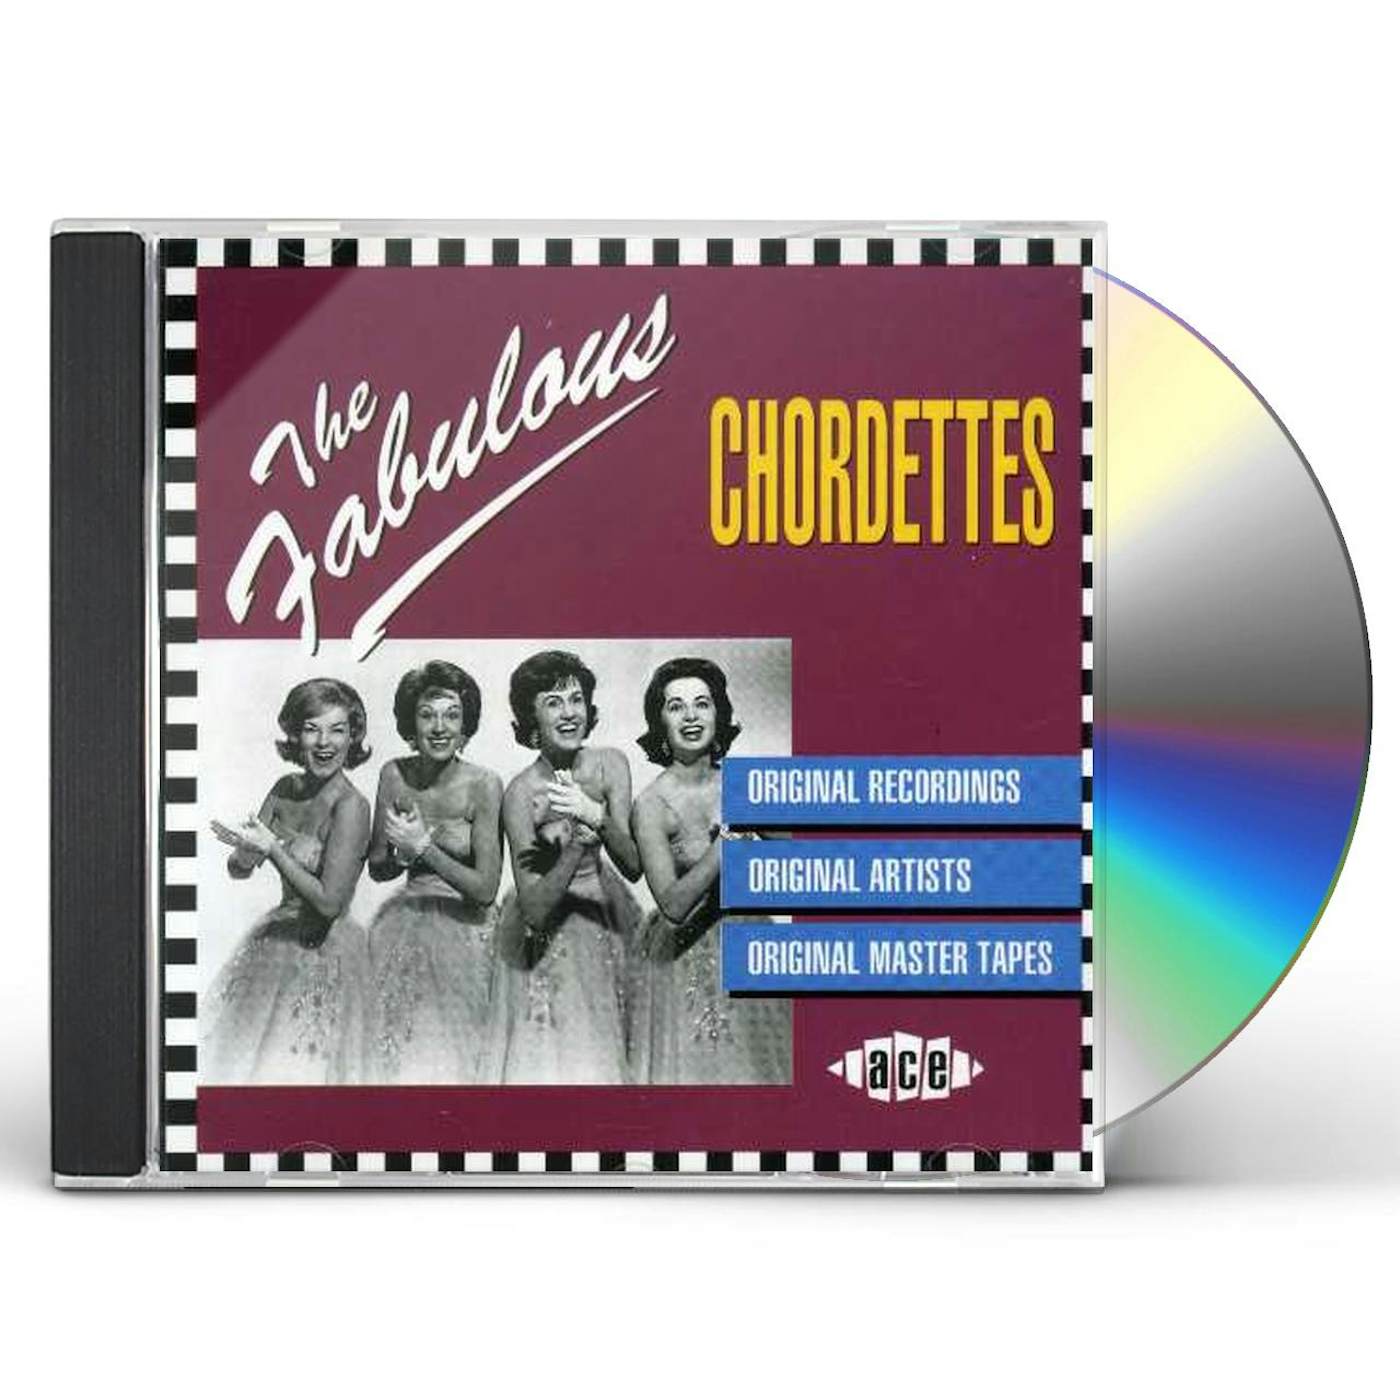 The Chordettes FABULOUS CD